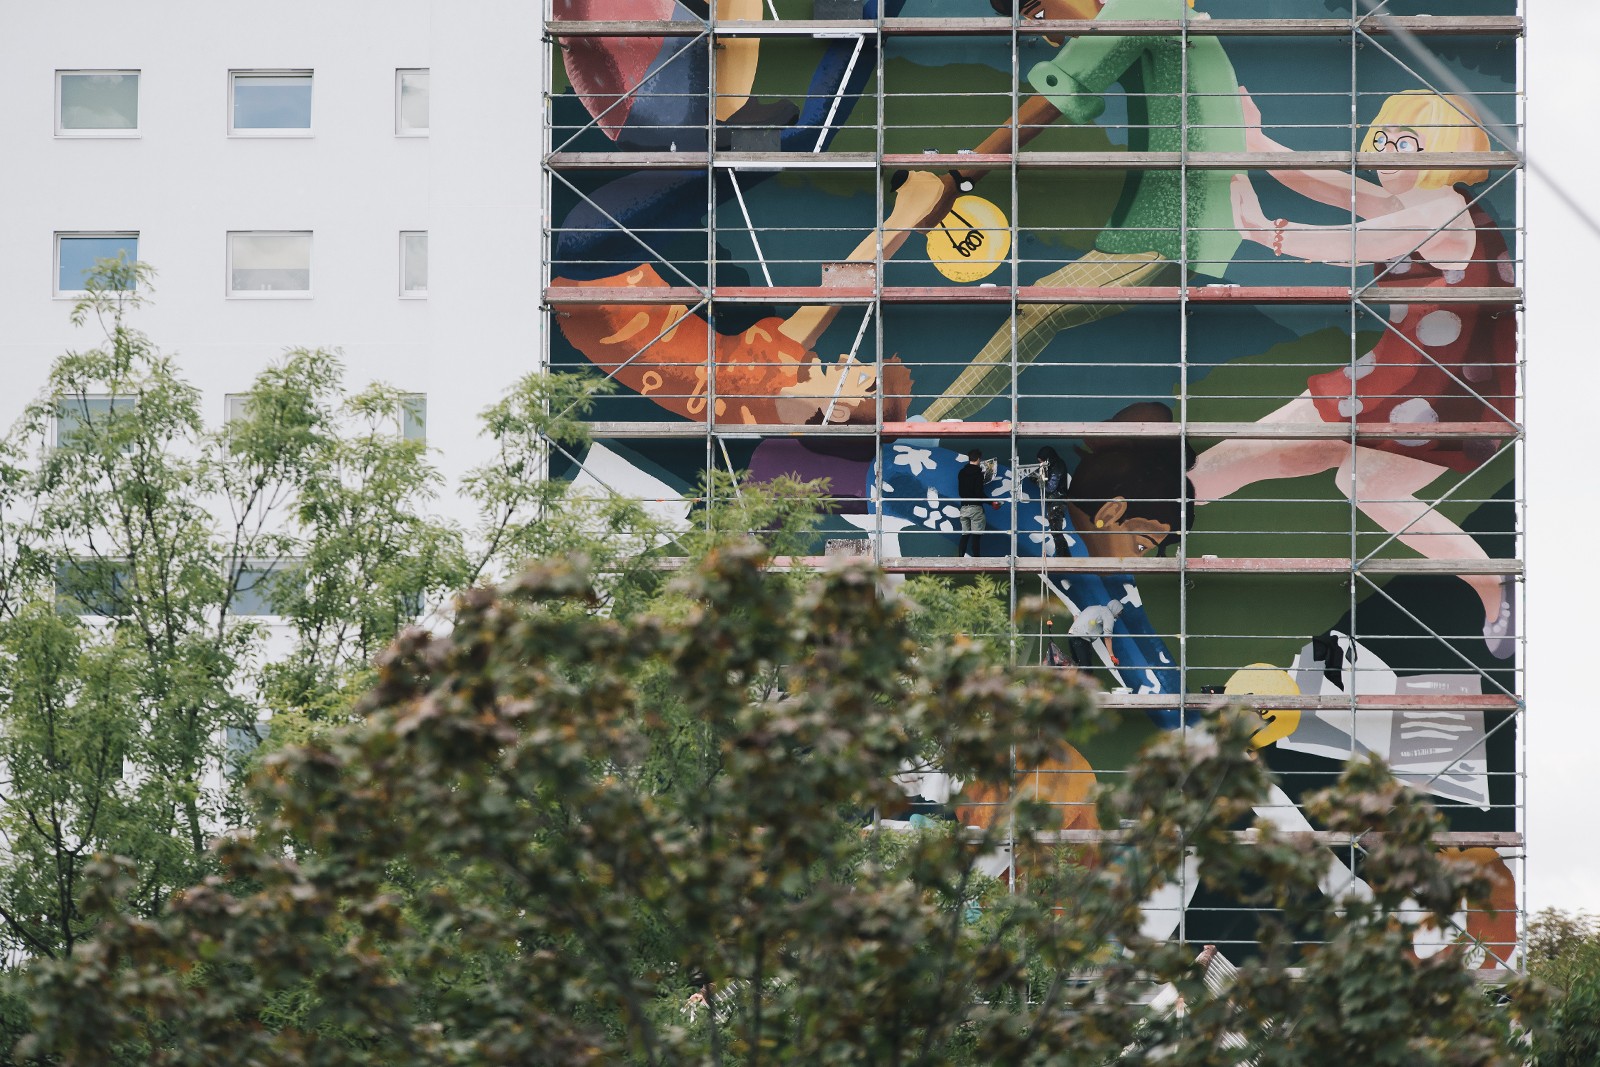 Mural artystyczny na budynku przy ul. Robotniczej 96 we Wrocławiu.jpg | Akademik Depot | Portfolio